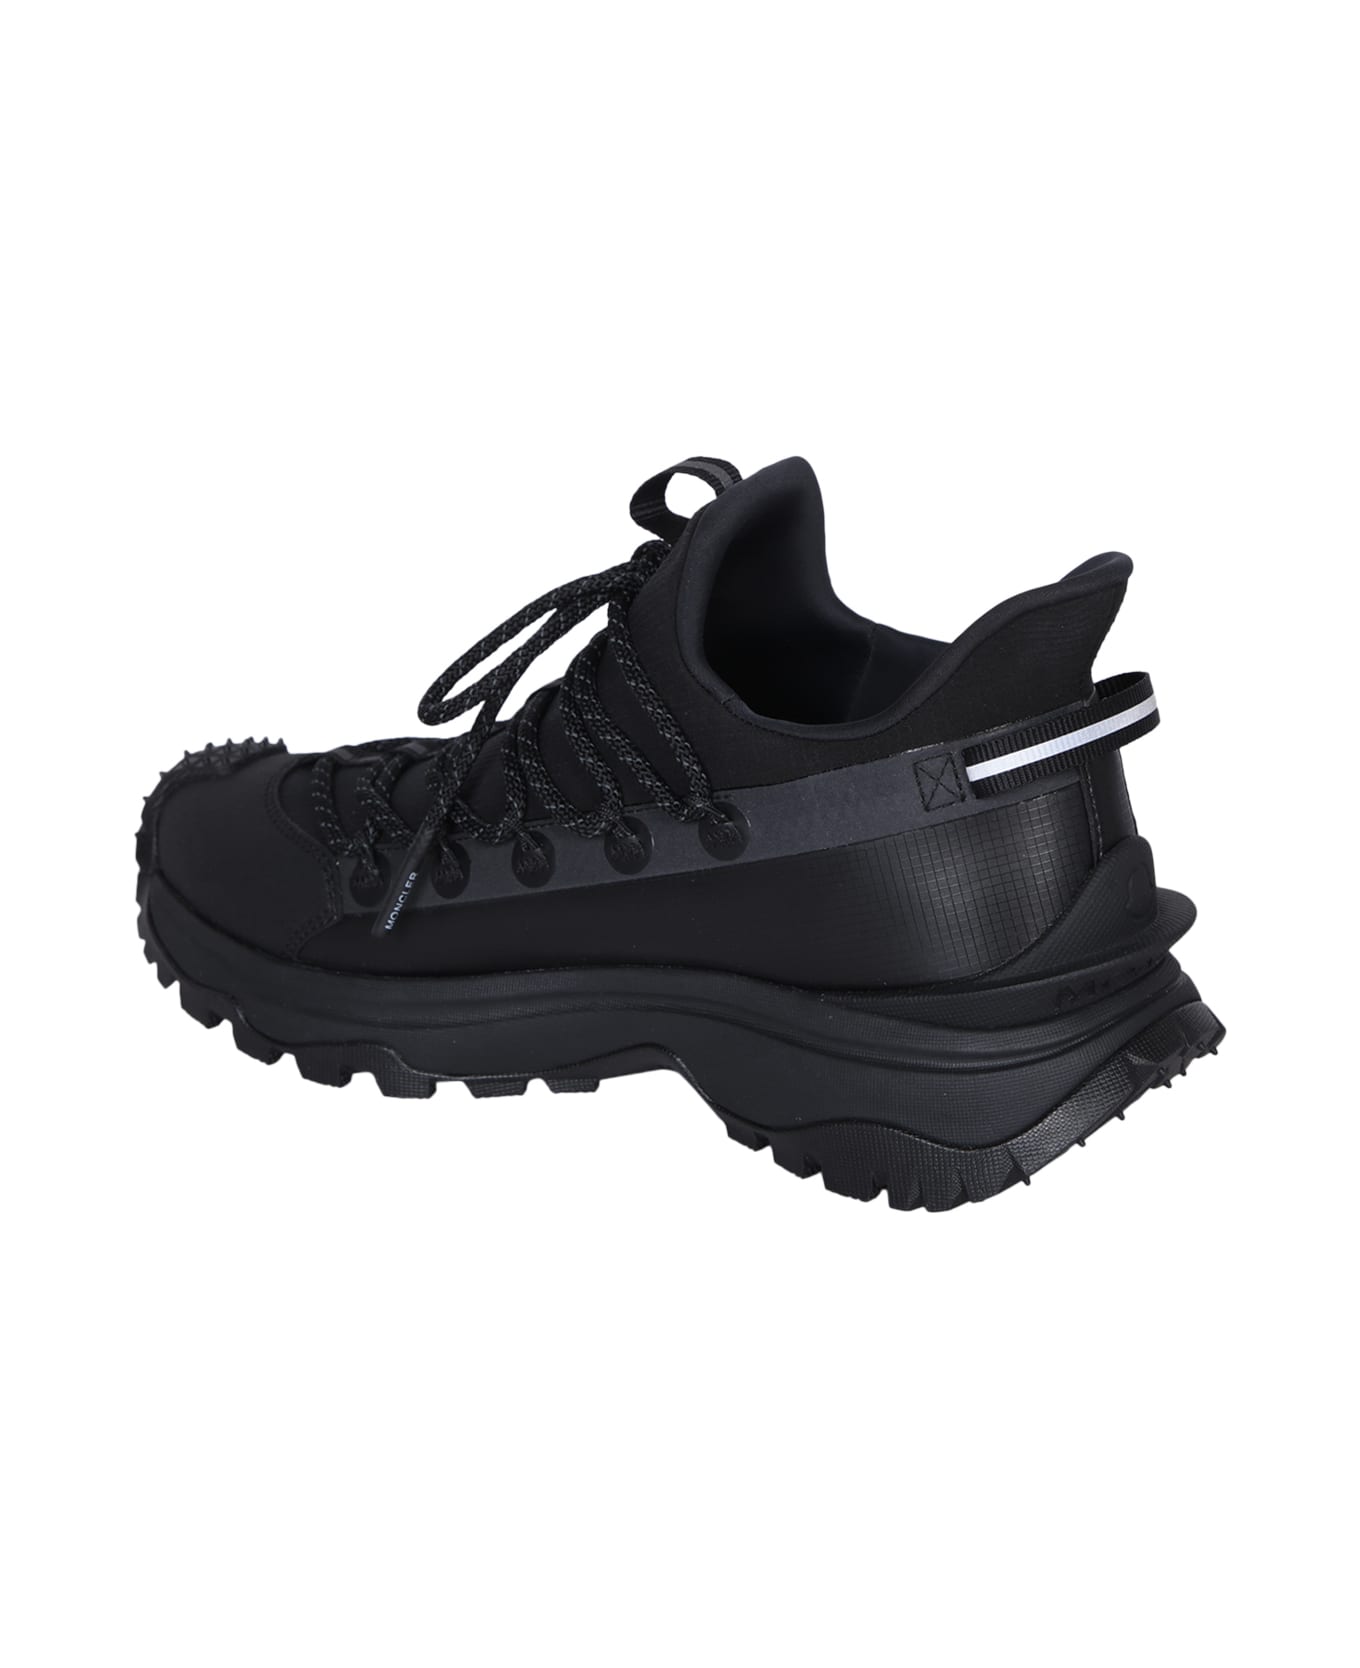 Moncler Black Trailgrip Lite 2 Sneakers - Black スニーカー